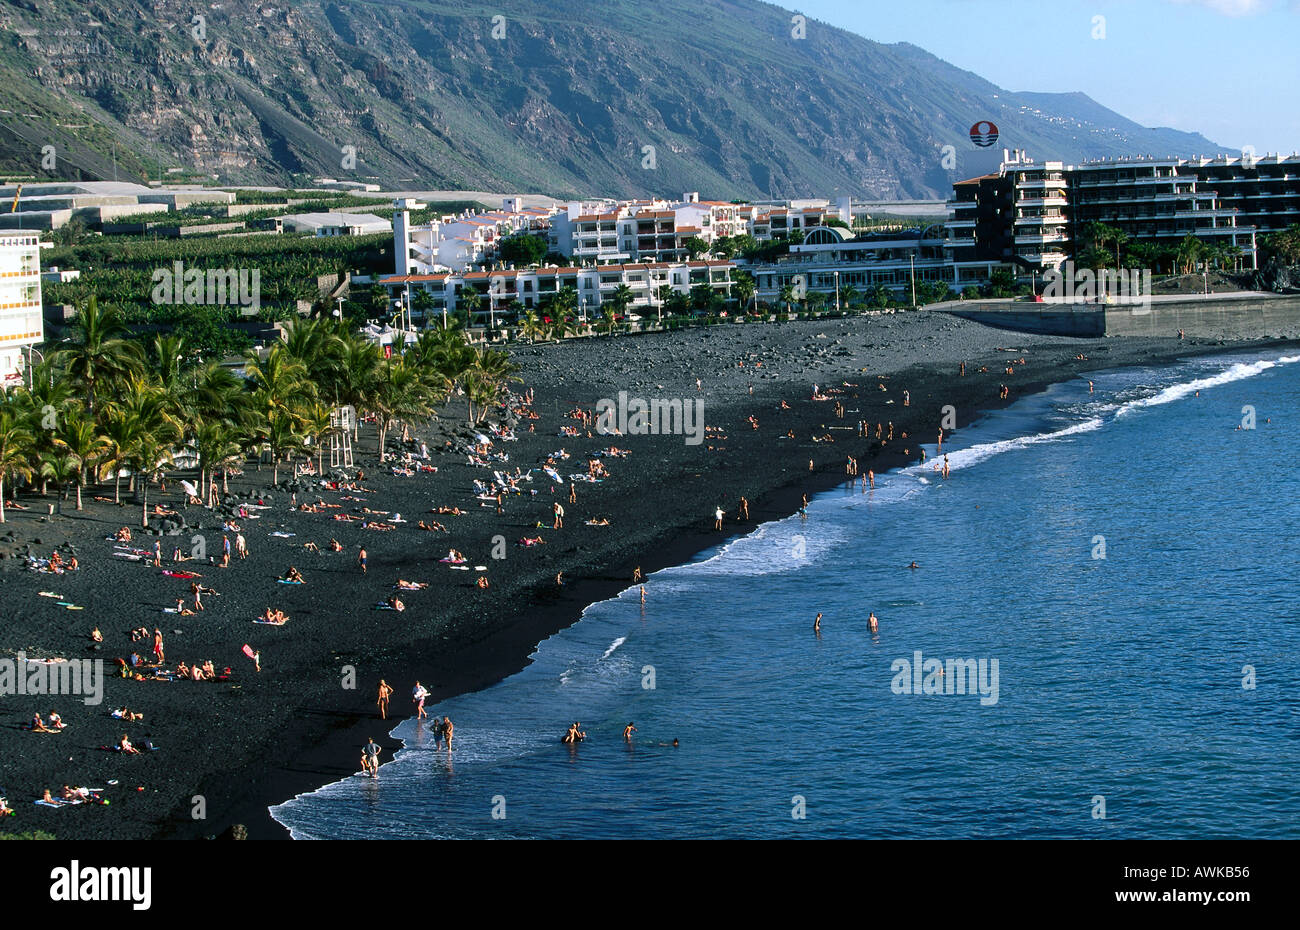 Les touristes sur la plage, Puerto Ano, La Palma, Canary Islands, Spain Banque D'Images